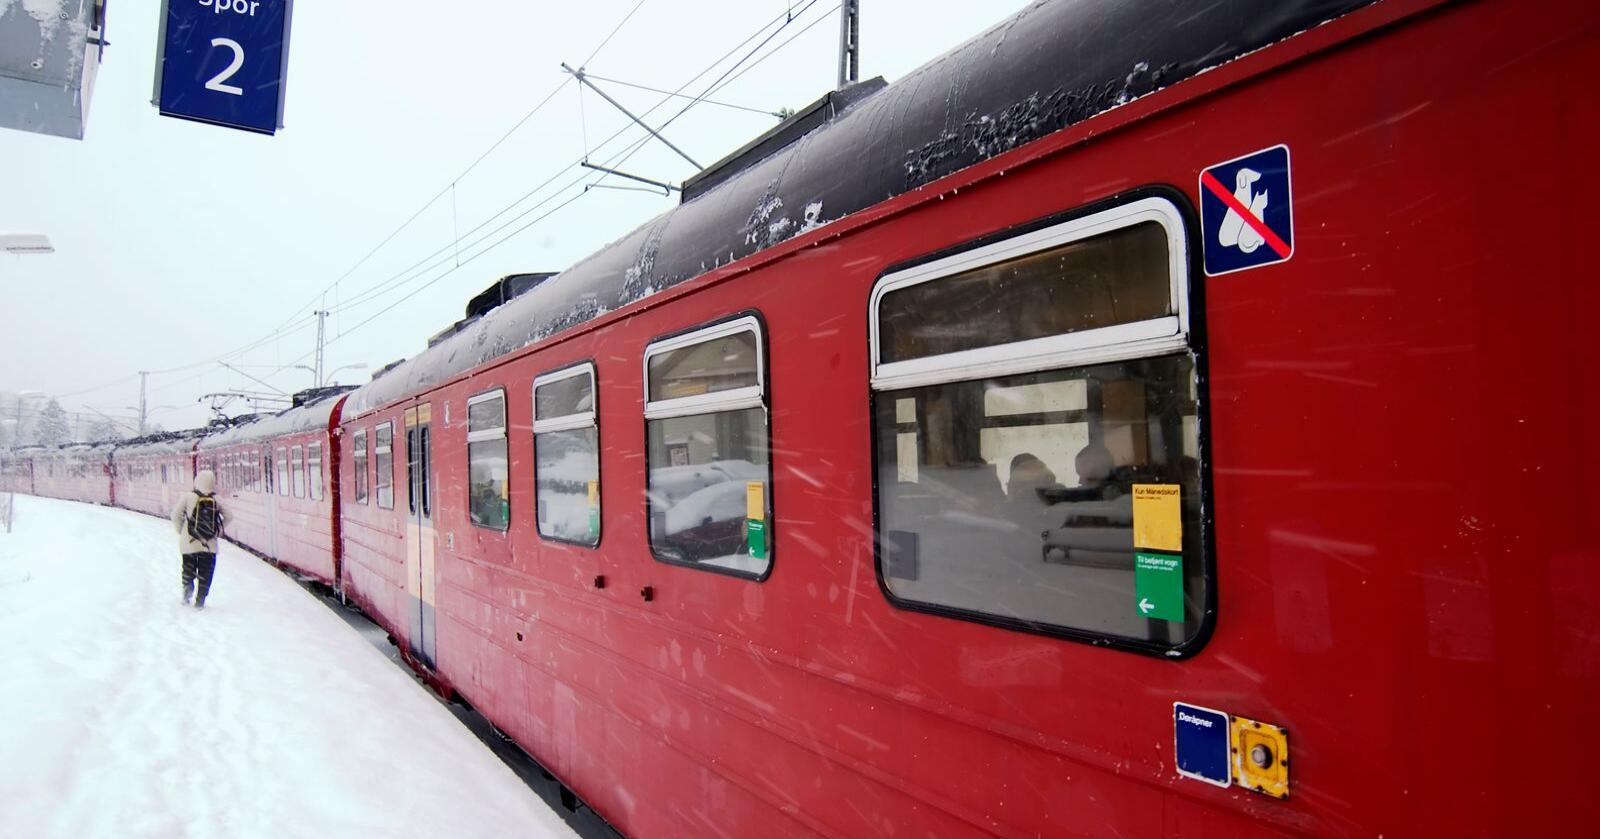 NTNU-forsker Morten Welde sier at Nord-Norgebanen sannsynligvis vil bli det mest ulønnsomme samferdselsprosjektet i Norge. Jeg er ikke enig, skriver innsenderen. Foto: Mostphotos